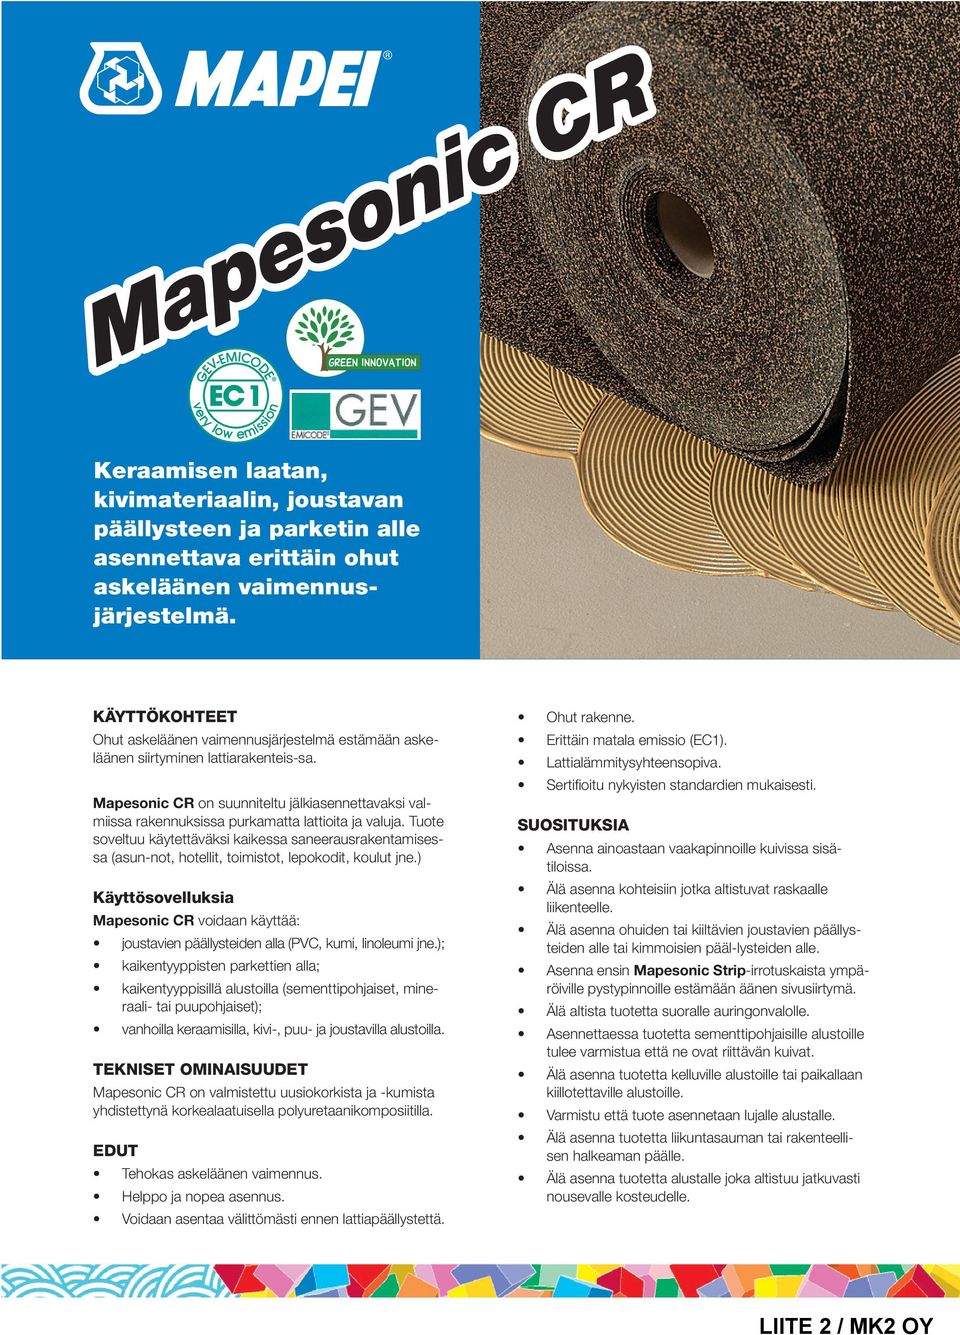 Mapesonic CR on suunniteltu jälkiasennettavaksi valmiissa rakennuksissa purkamatta lattioita ja valuja.